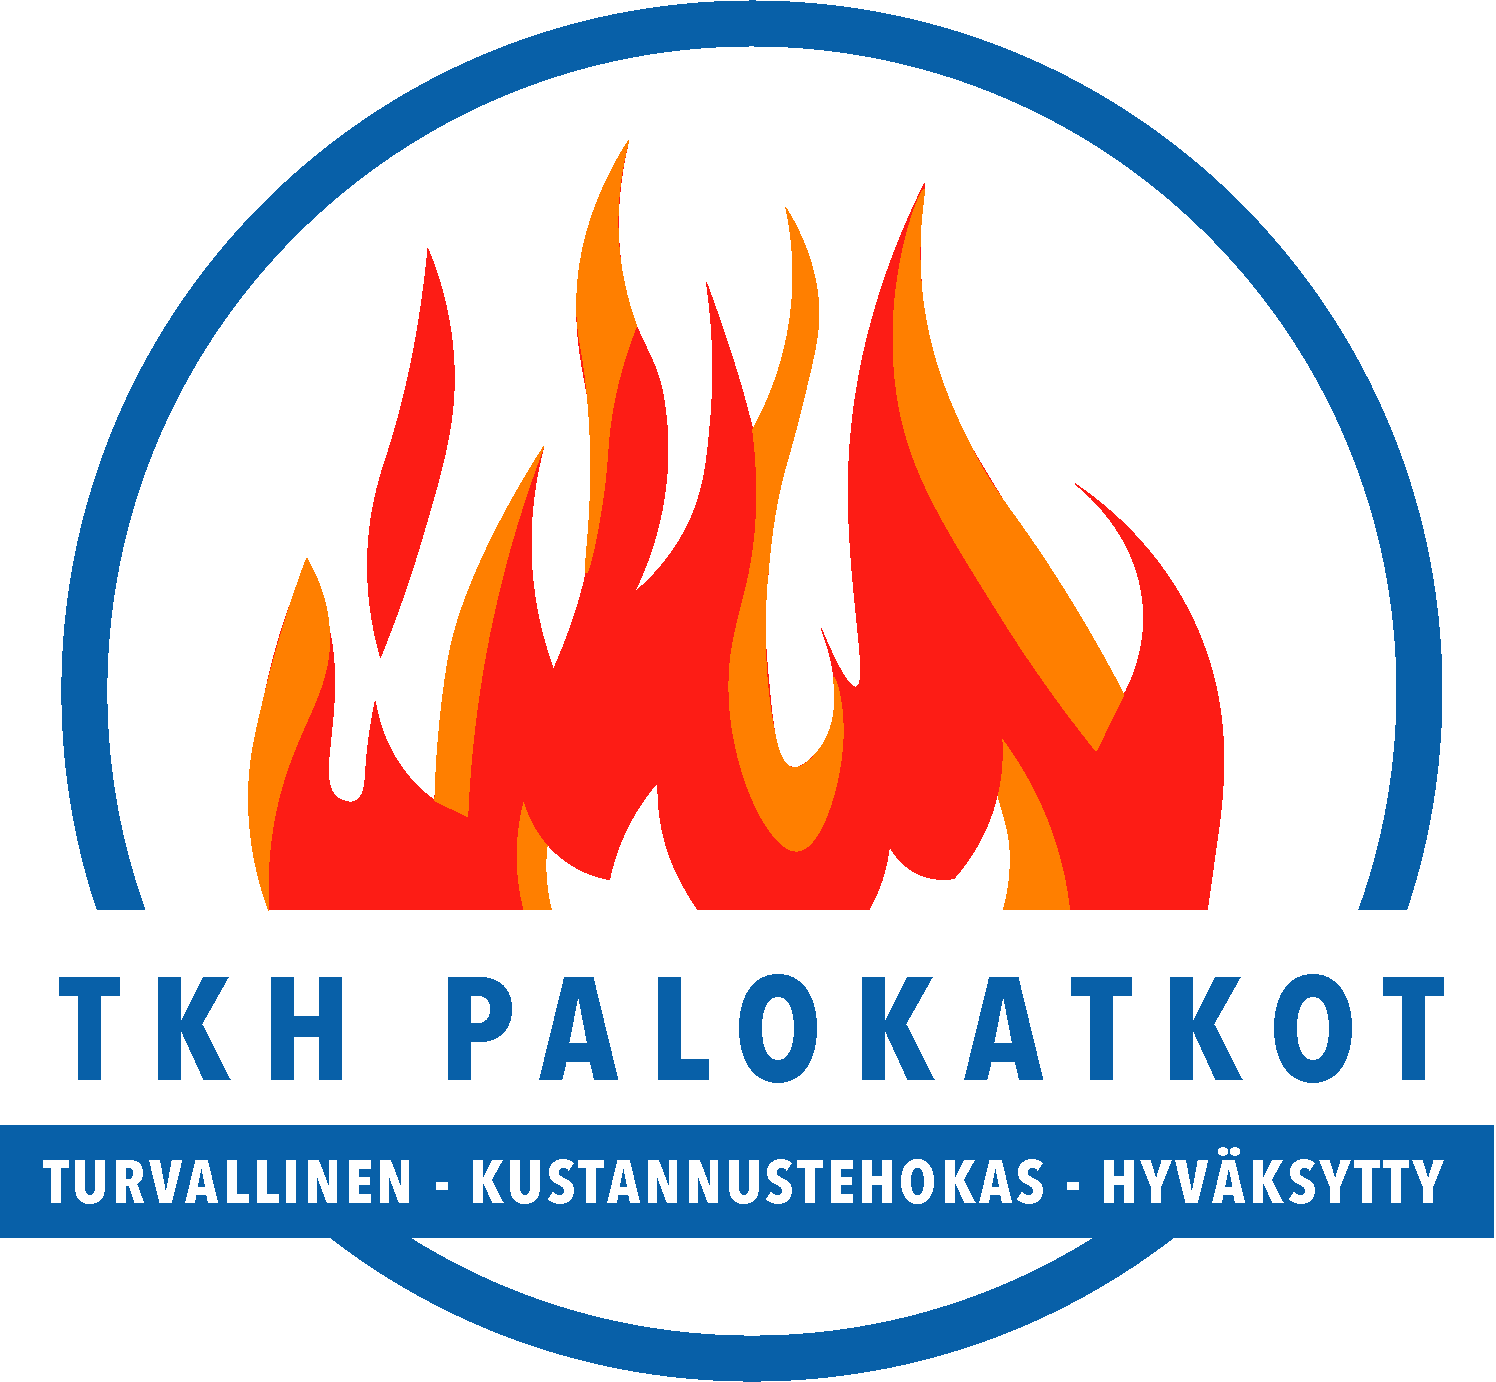 Tkh Palokatkot